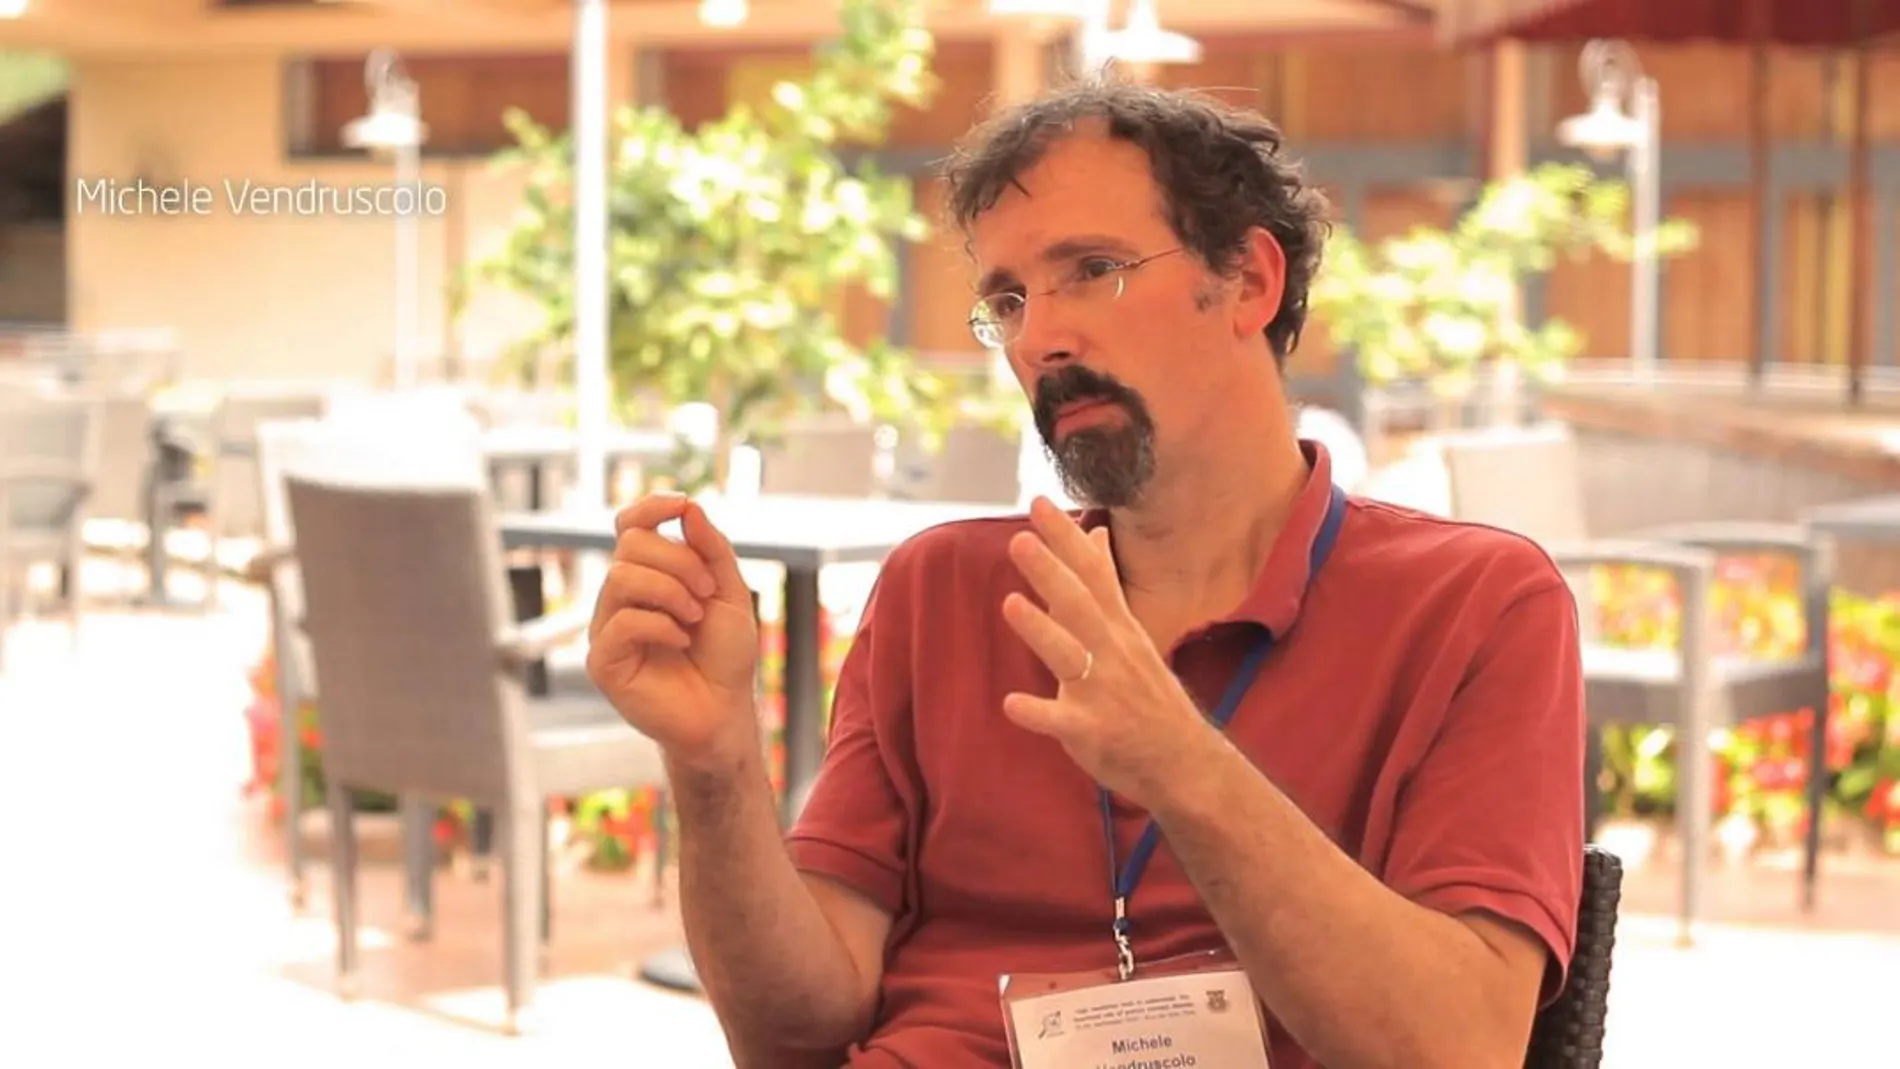 Michele Vendruscolo, uno de los científicos responsables del proyecto /IDPbyNMR-Youtube